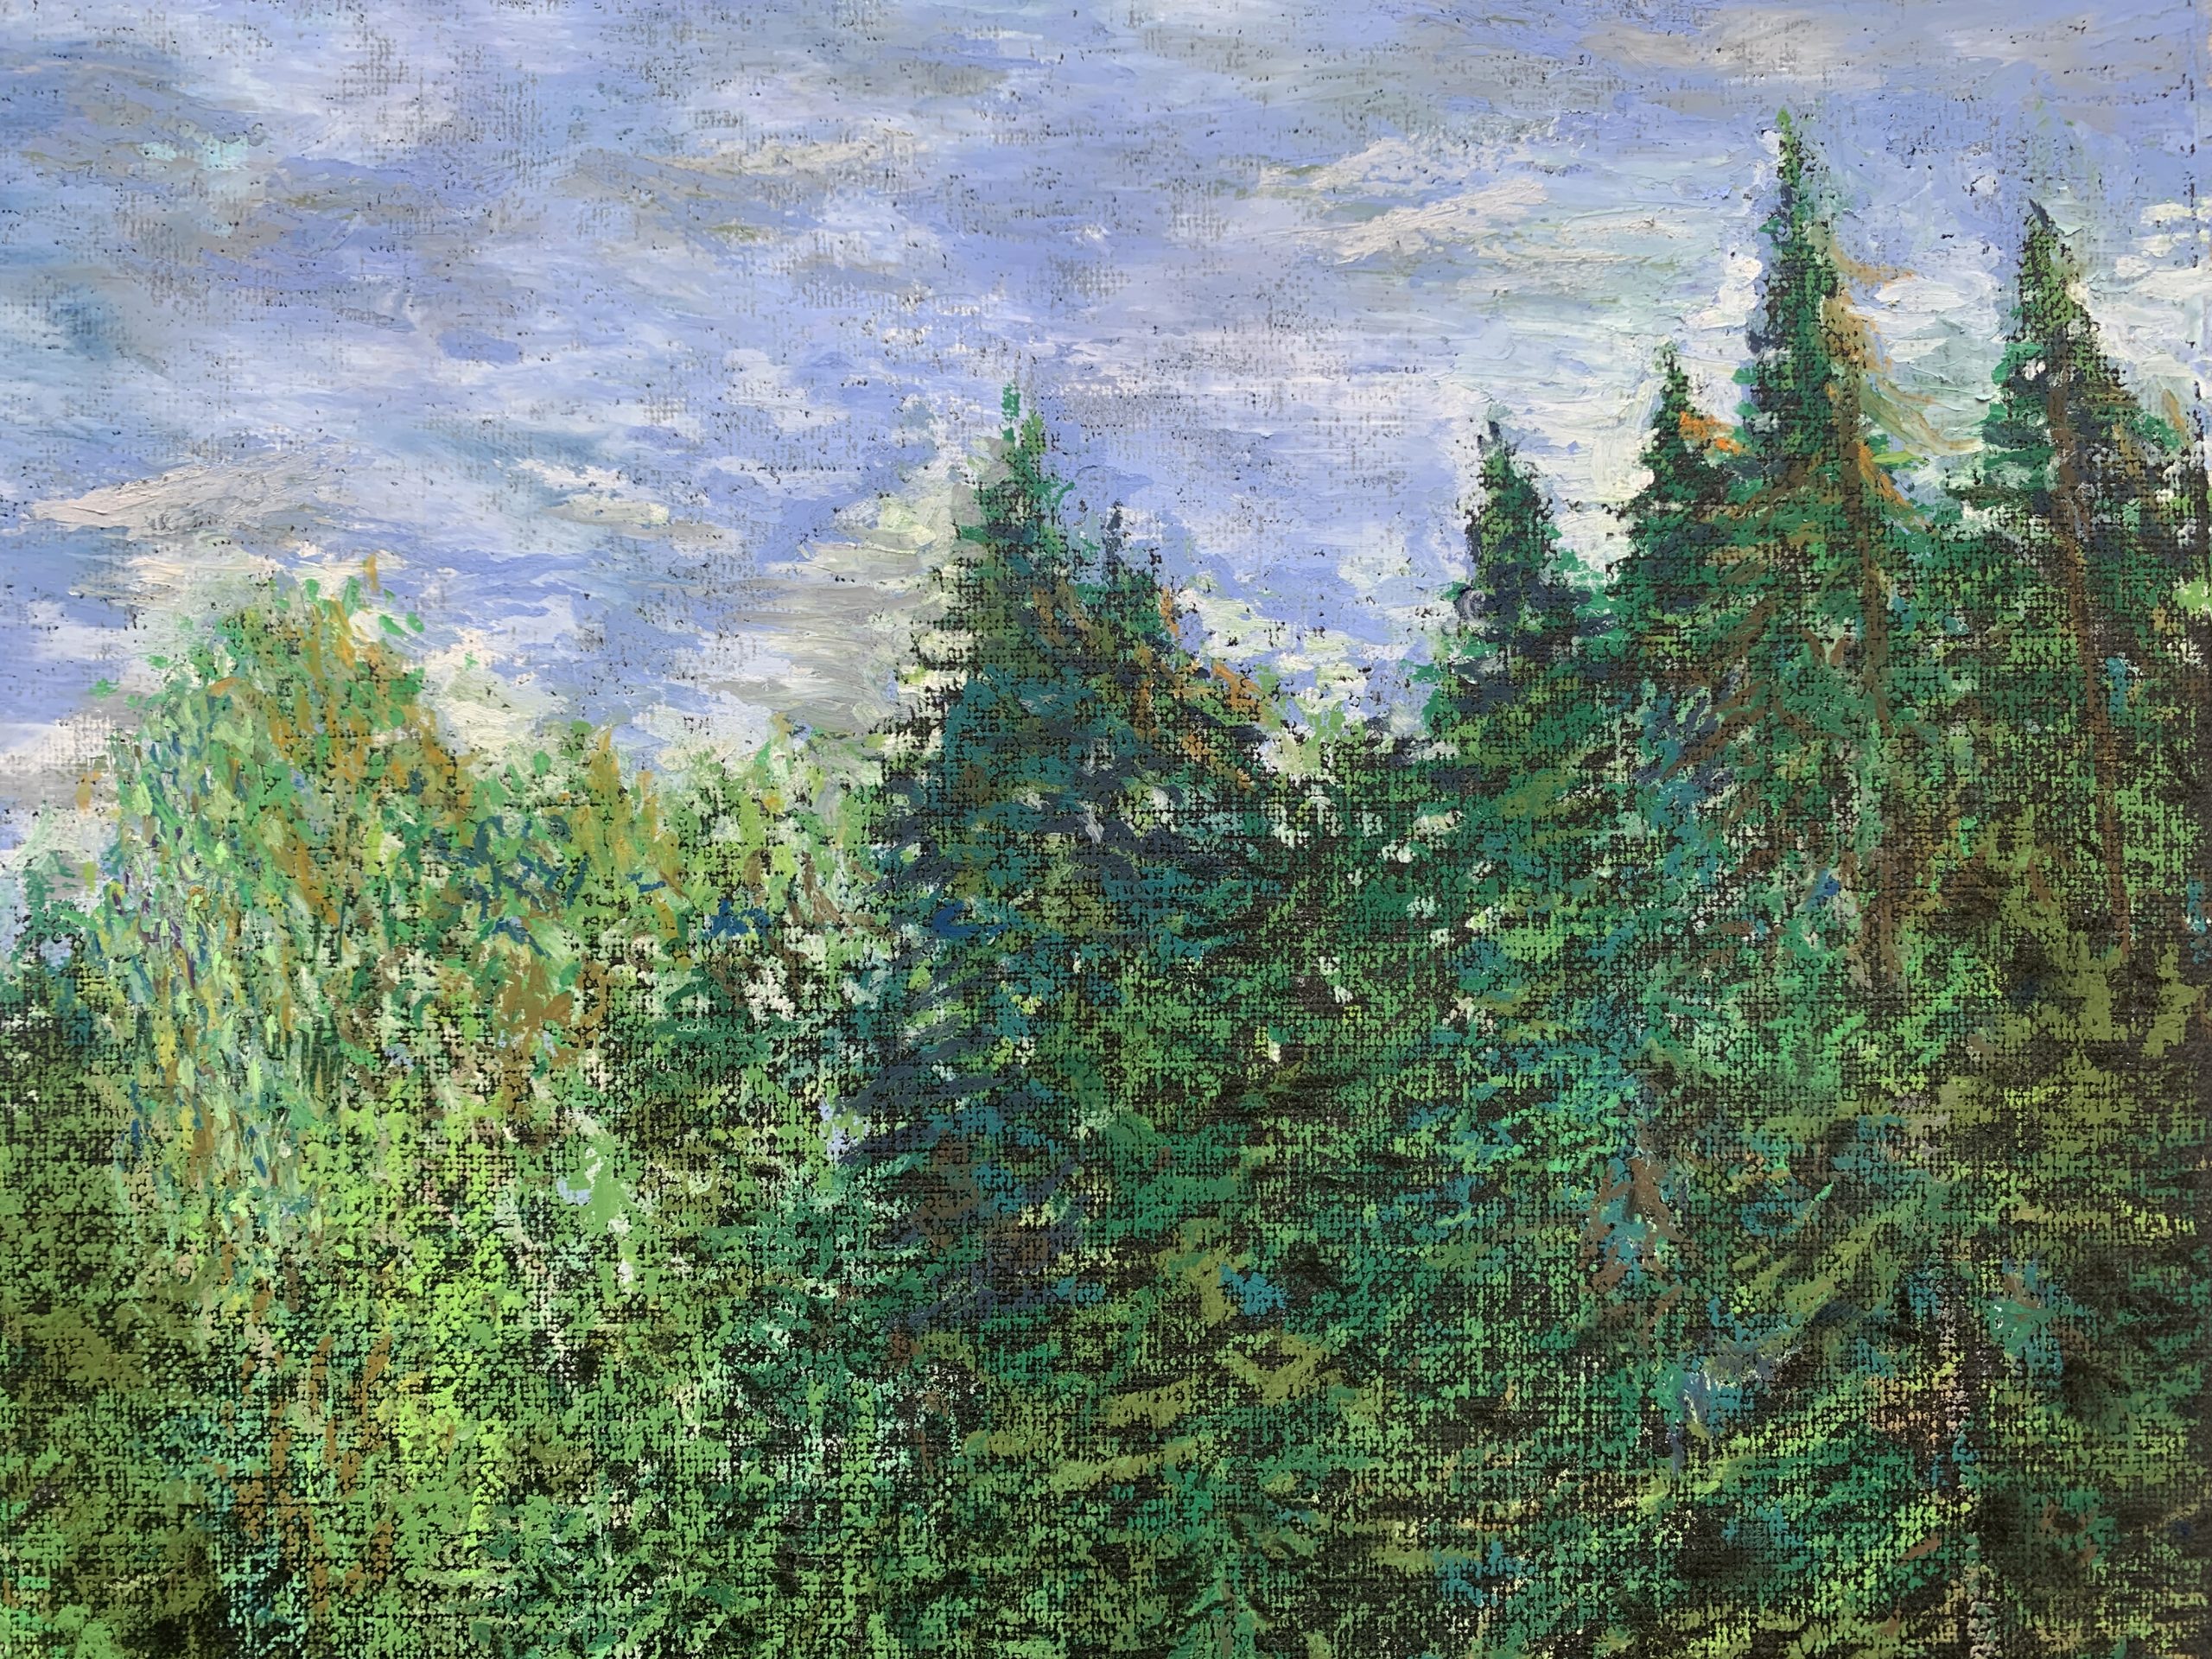 прудик у дороги масляная пастель картина пейзажи природа художник Альберт Сафиуллин